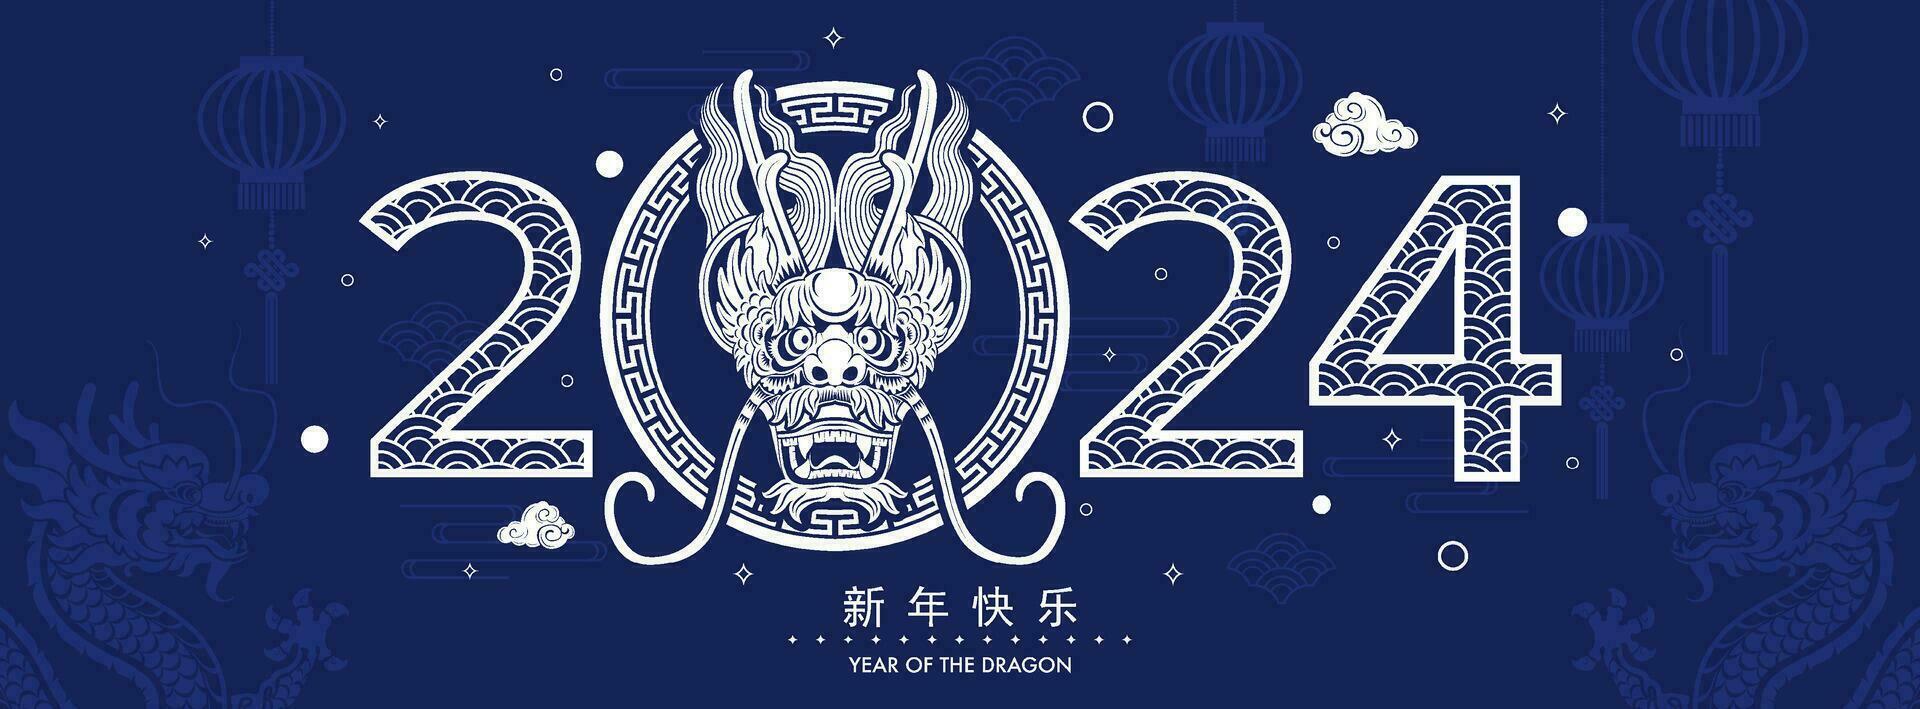 contento chino nuevo año 2024 el continuar zodíaco firmar con flor,linterna,asiática elementos vector